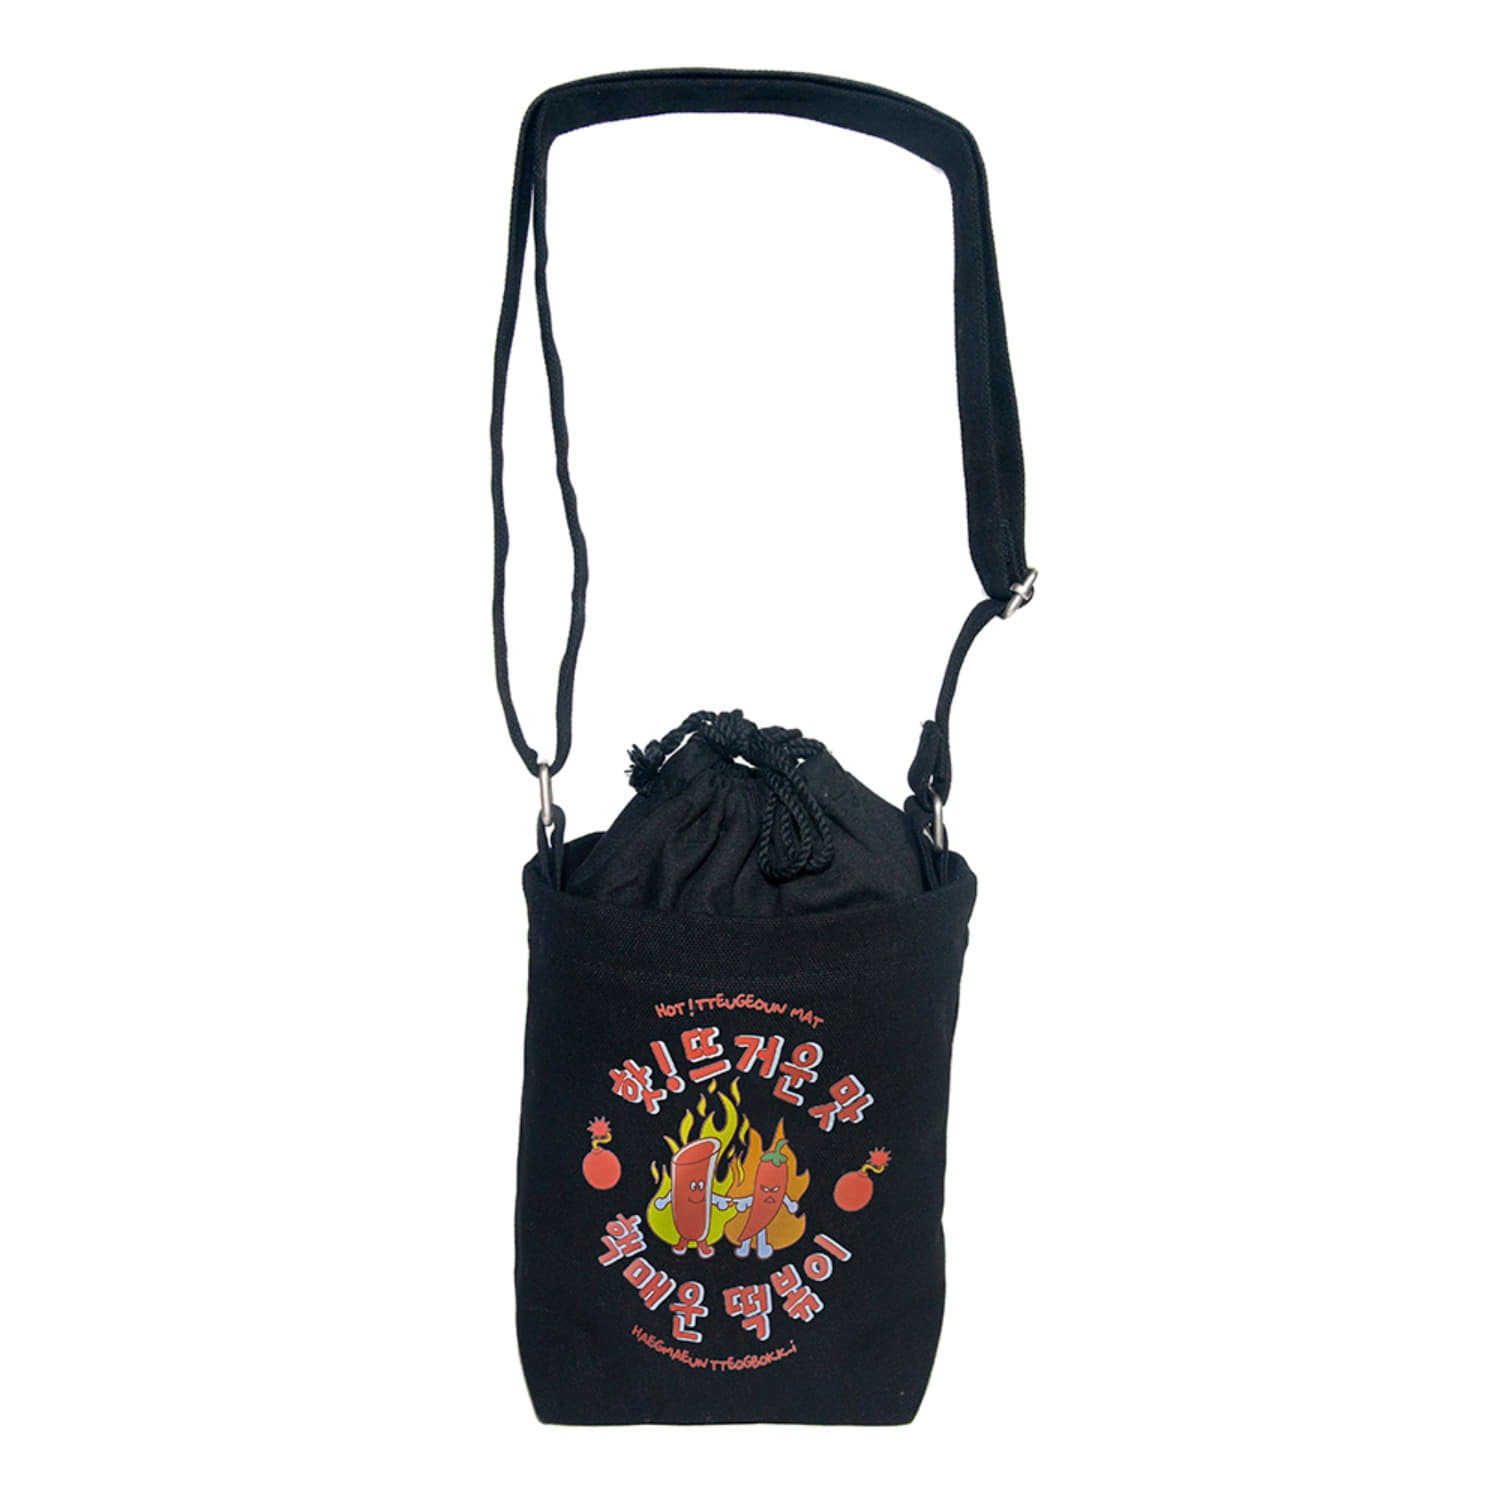 떡볶이 스몰 캔버스 숄더백 블랙 tteokbokki small canvas shoulder bag (Black)